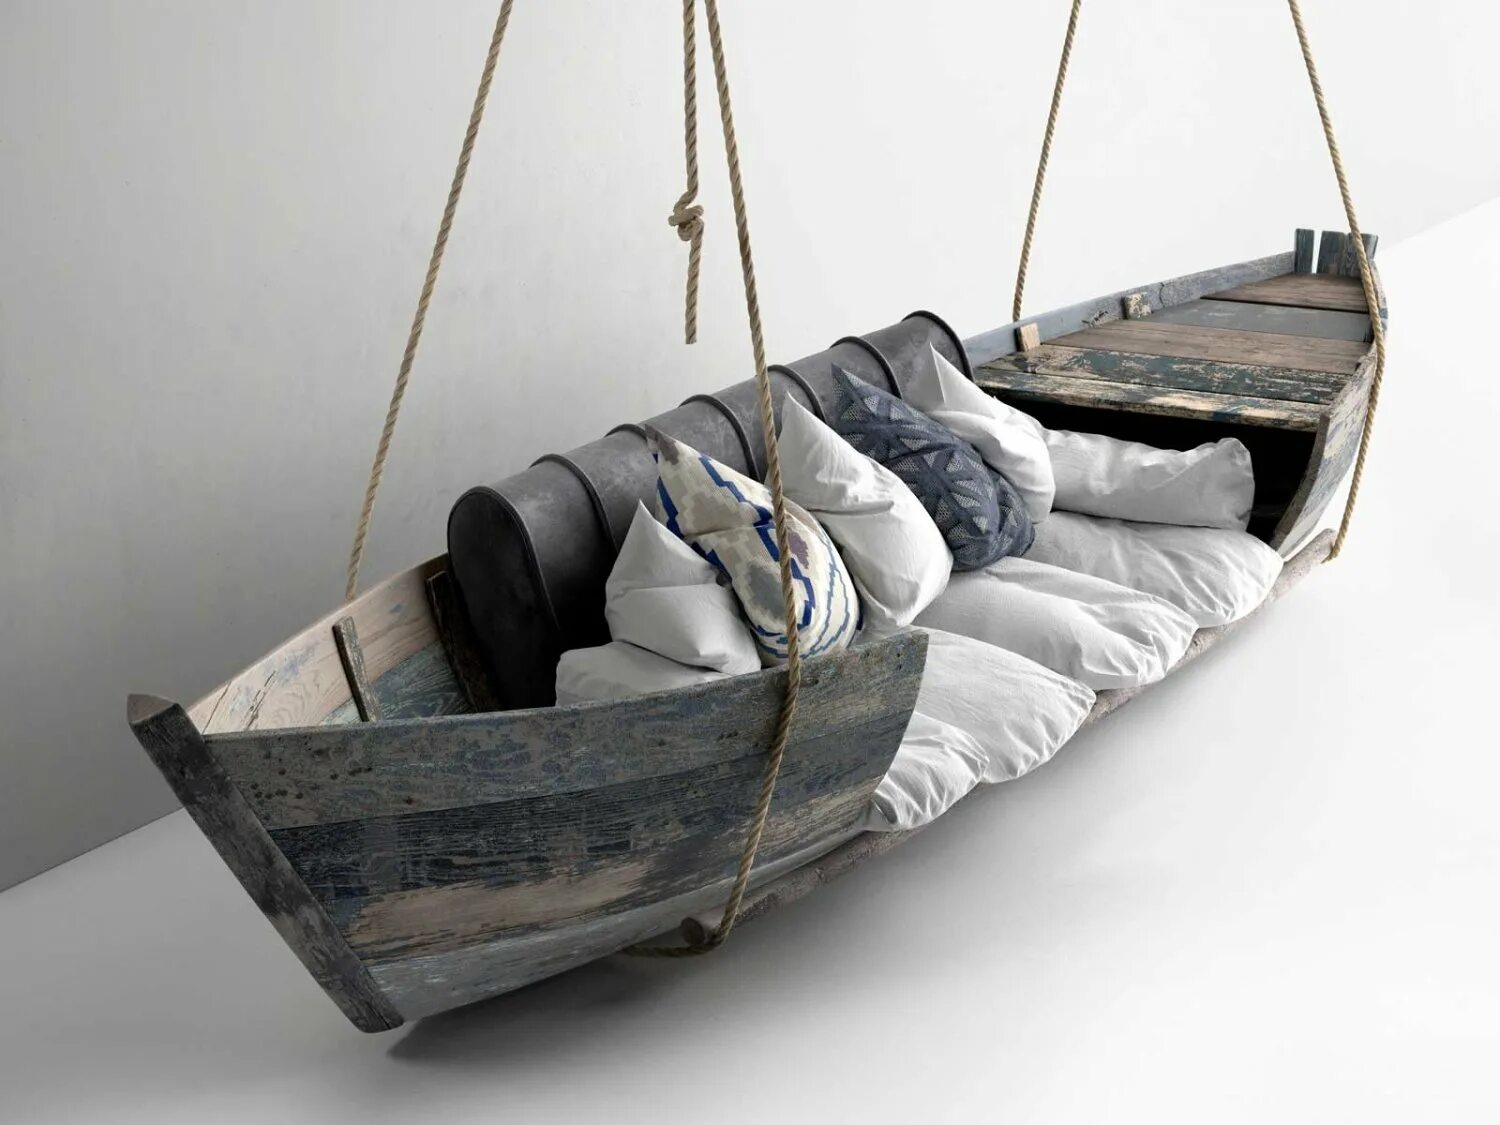 Лодка в интерьере. Старая лодка в интерьере. Деревянная лодка в интерьере. Мебель из старых лодок. Creative unsinkable boat decor